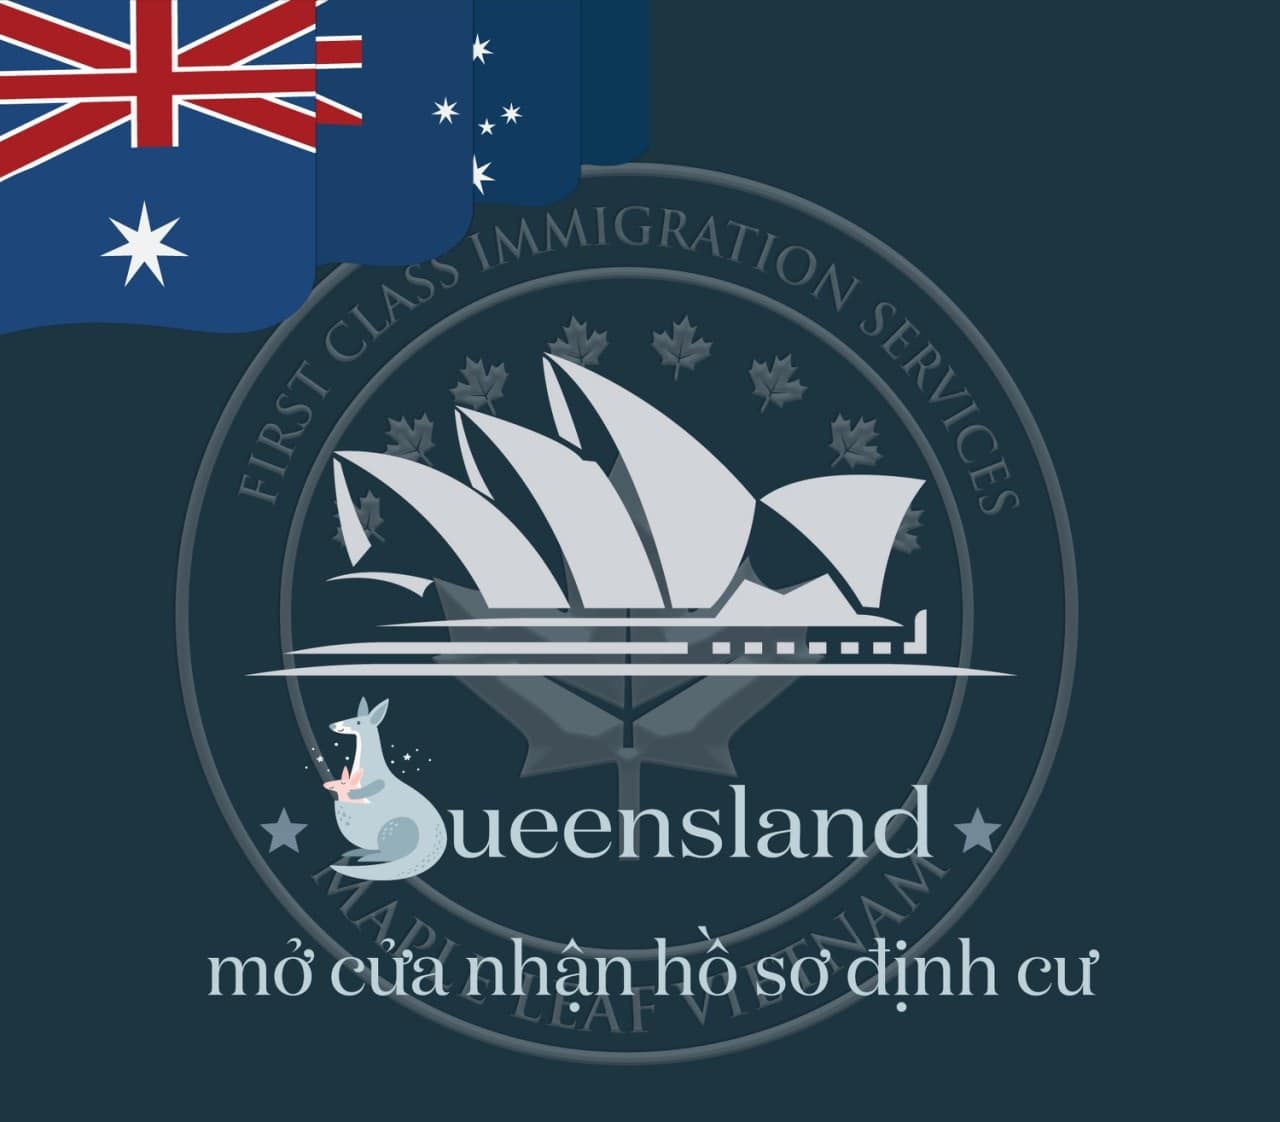 Từ ngày 29/07: Tiểu bang Queensland mở cửa chương trình định cư diện tay nghề